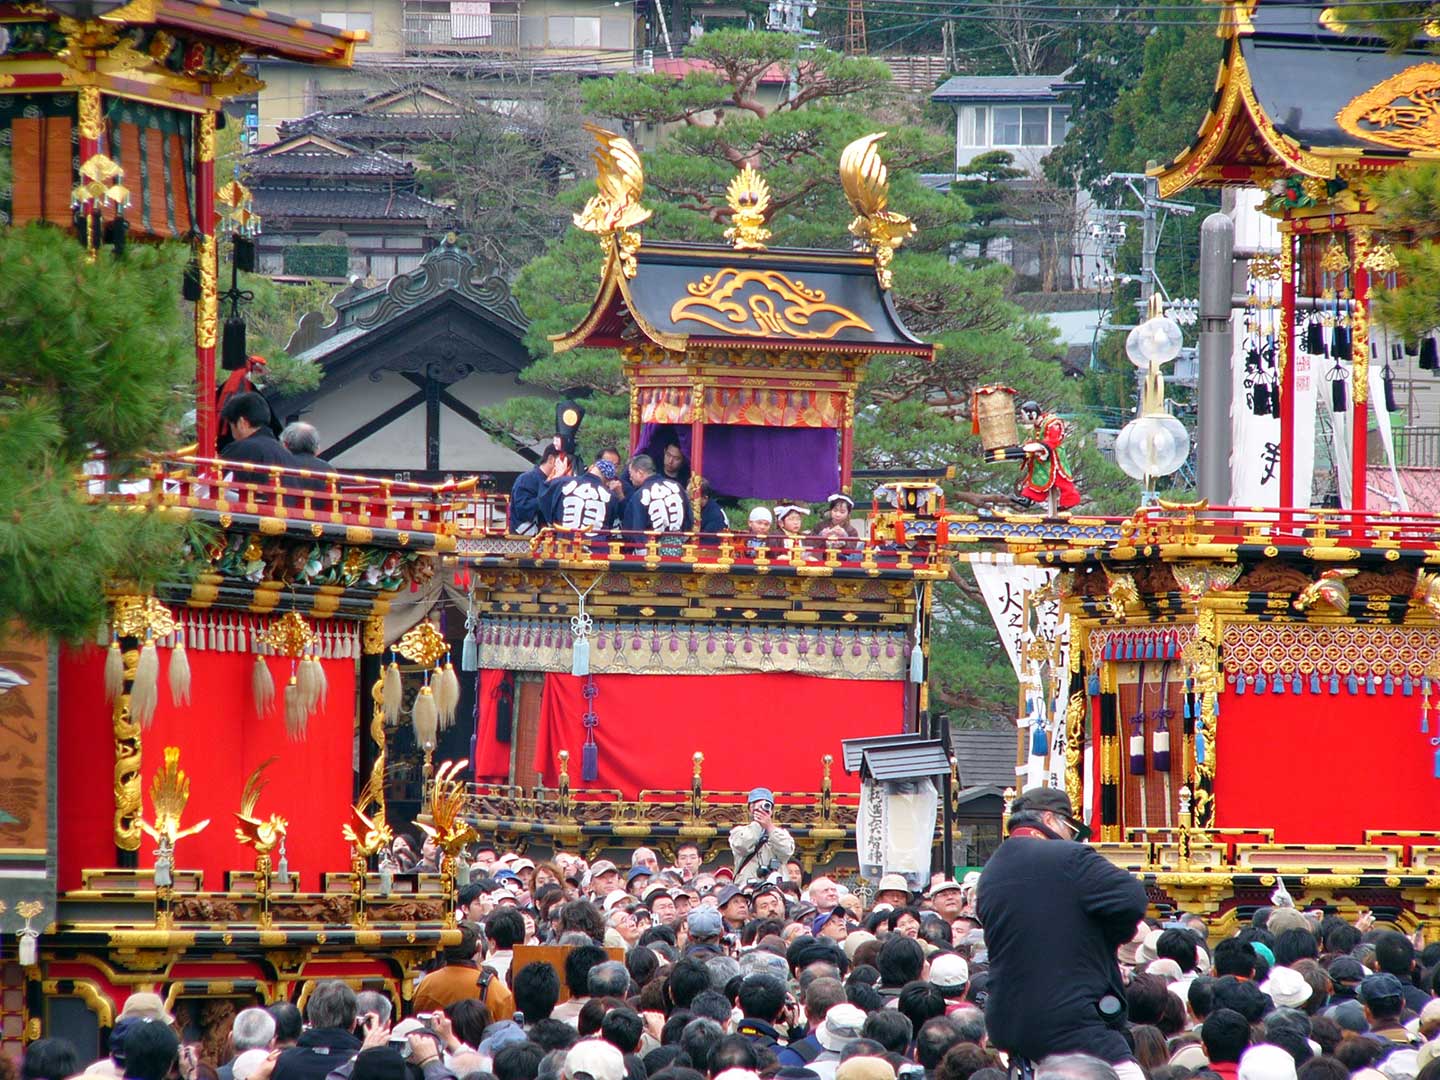 تاكاياما ماتسوري (高山 祭 り) ، أحد أشهر المهرجانات في اليابان.